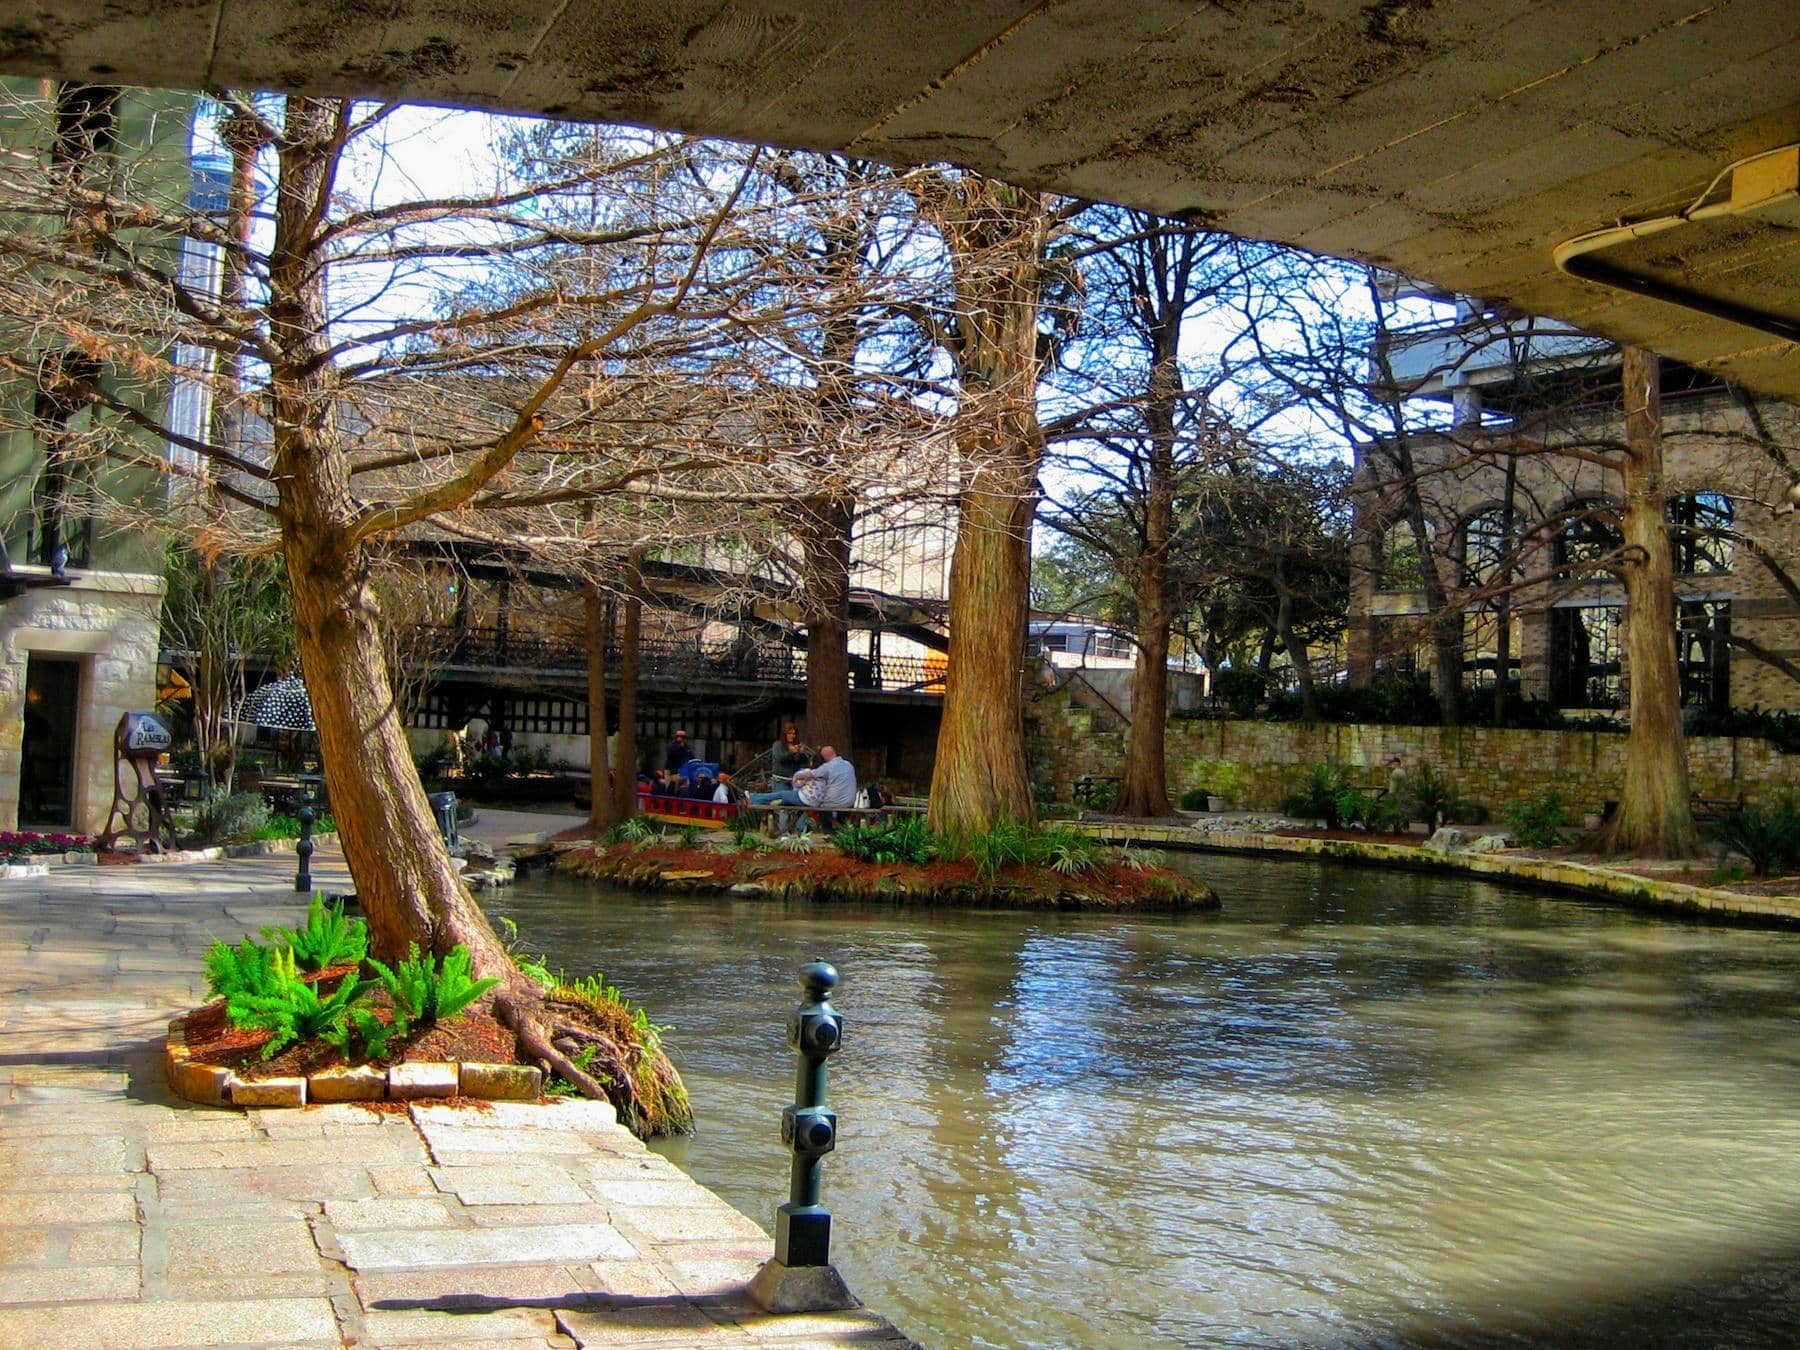 San Antonio, Texas: A “river walks” through it. (Get it?)